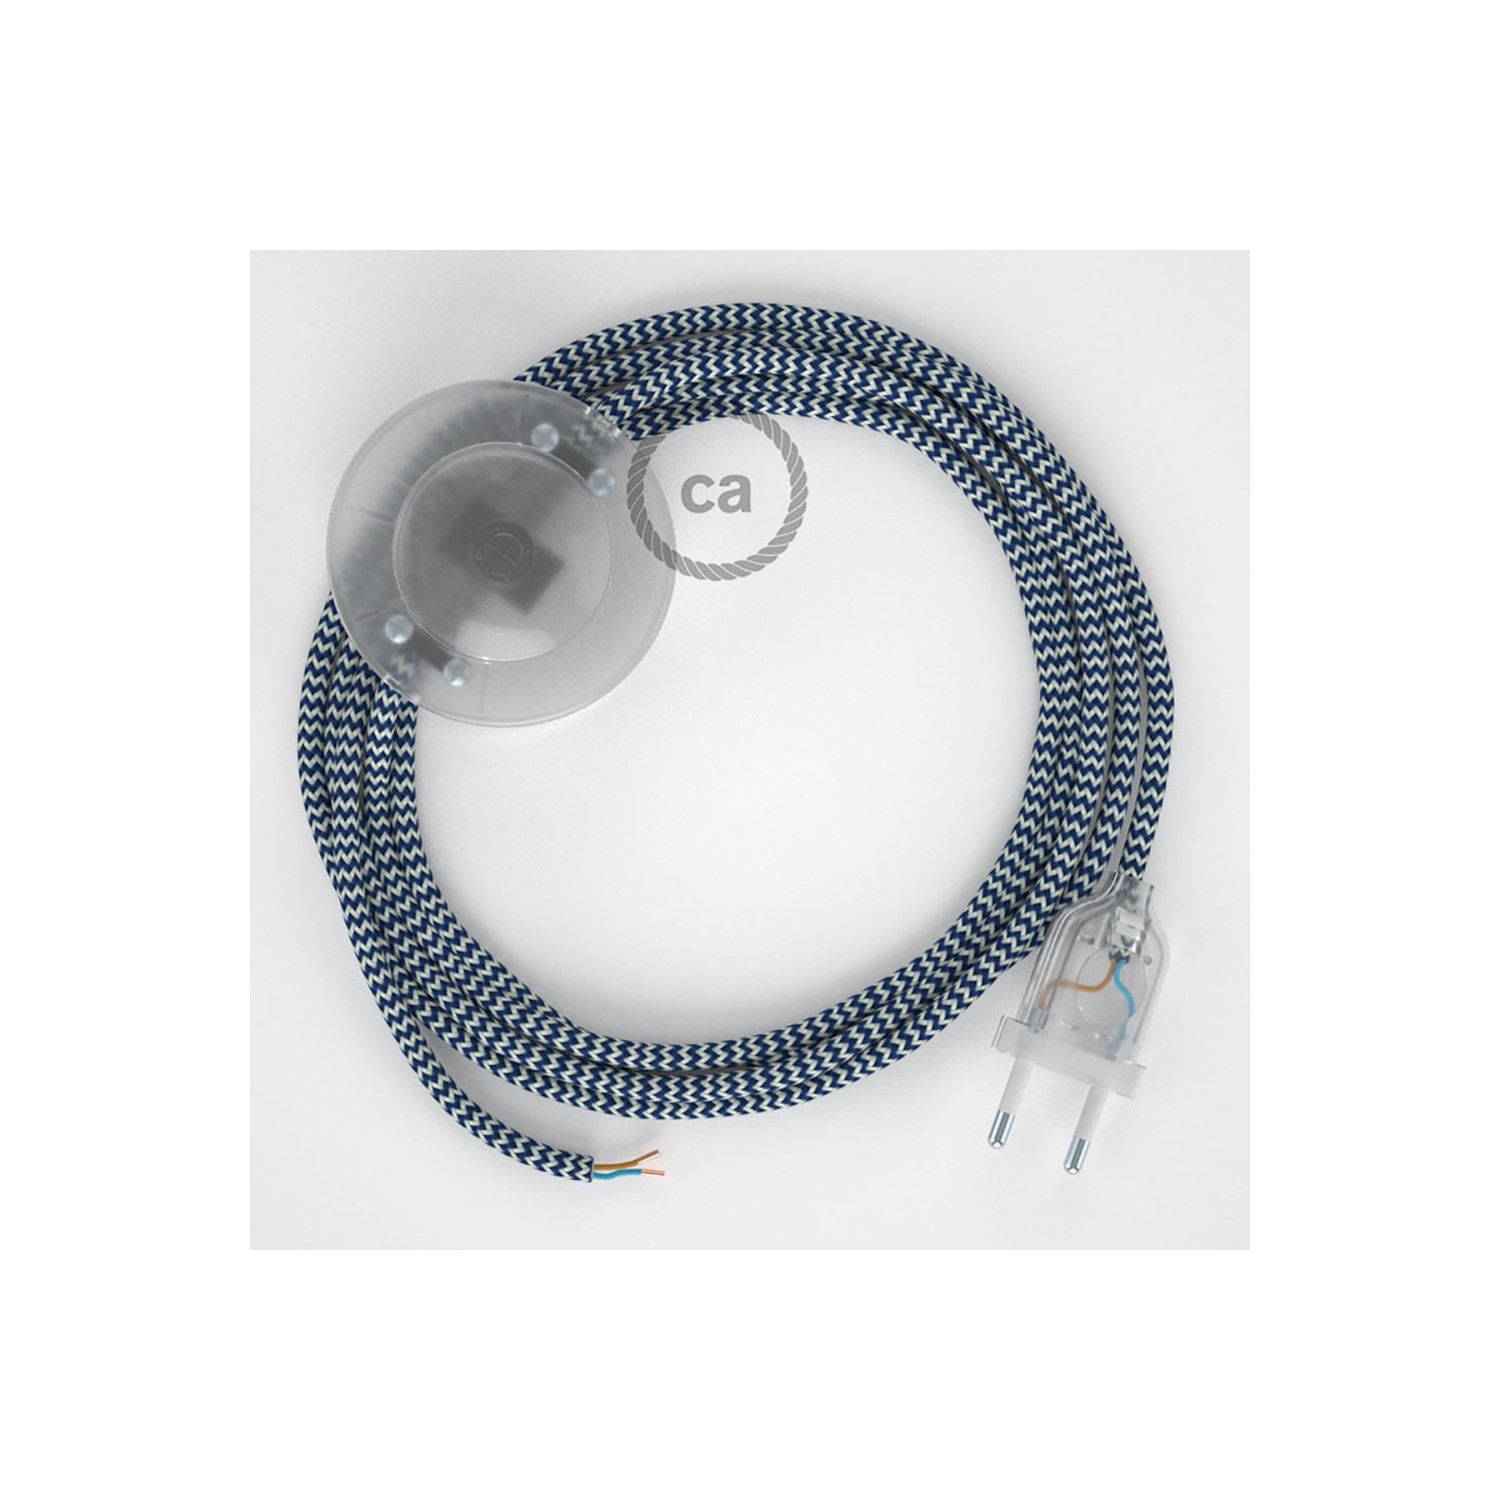 Stehleuchte Anschlussleitung RZ12 Zick-Zack Weiß Blau Seideneffekt 3 m. Wählen Sie aus drei Farben bei Schalter und Stecke.